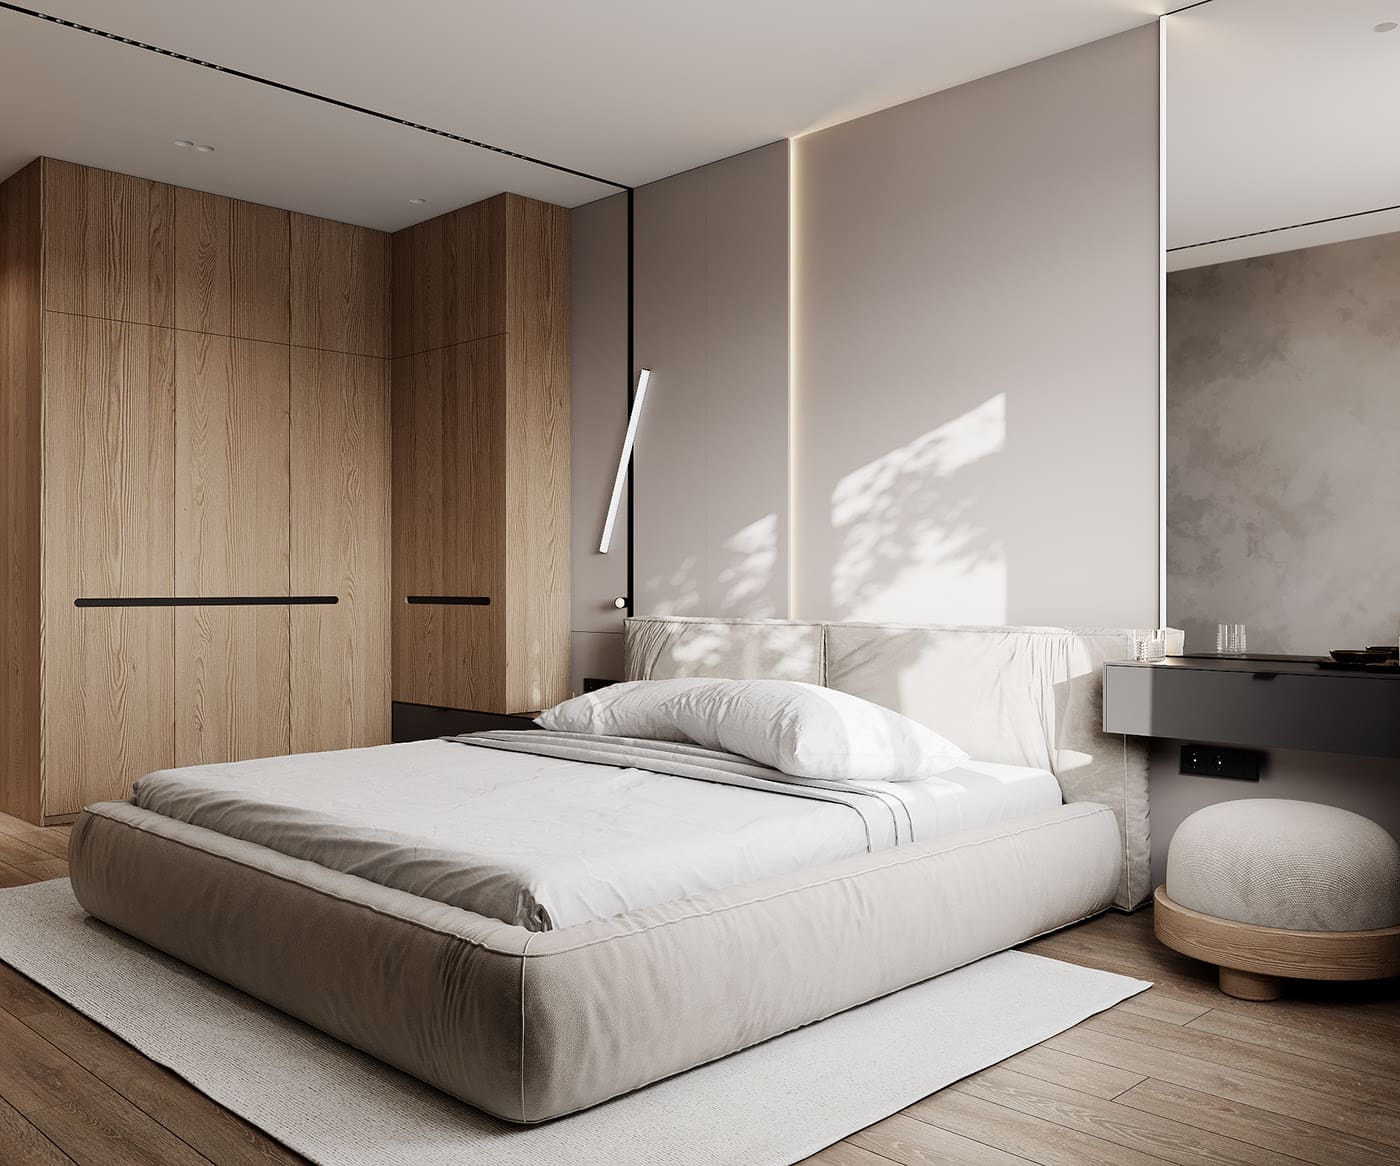 Лаконичная квартира в стиле минимализм, спальня, фото 20